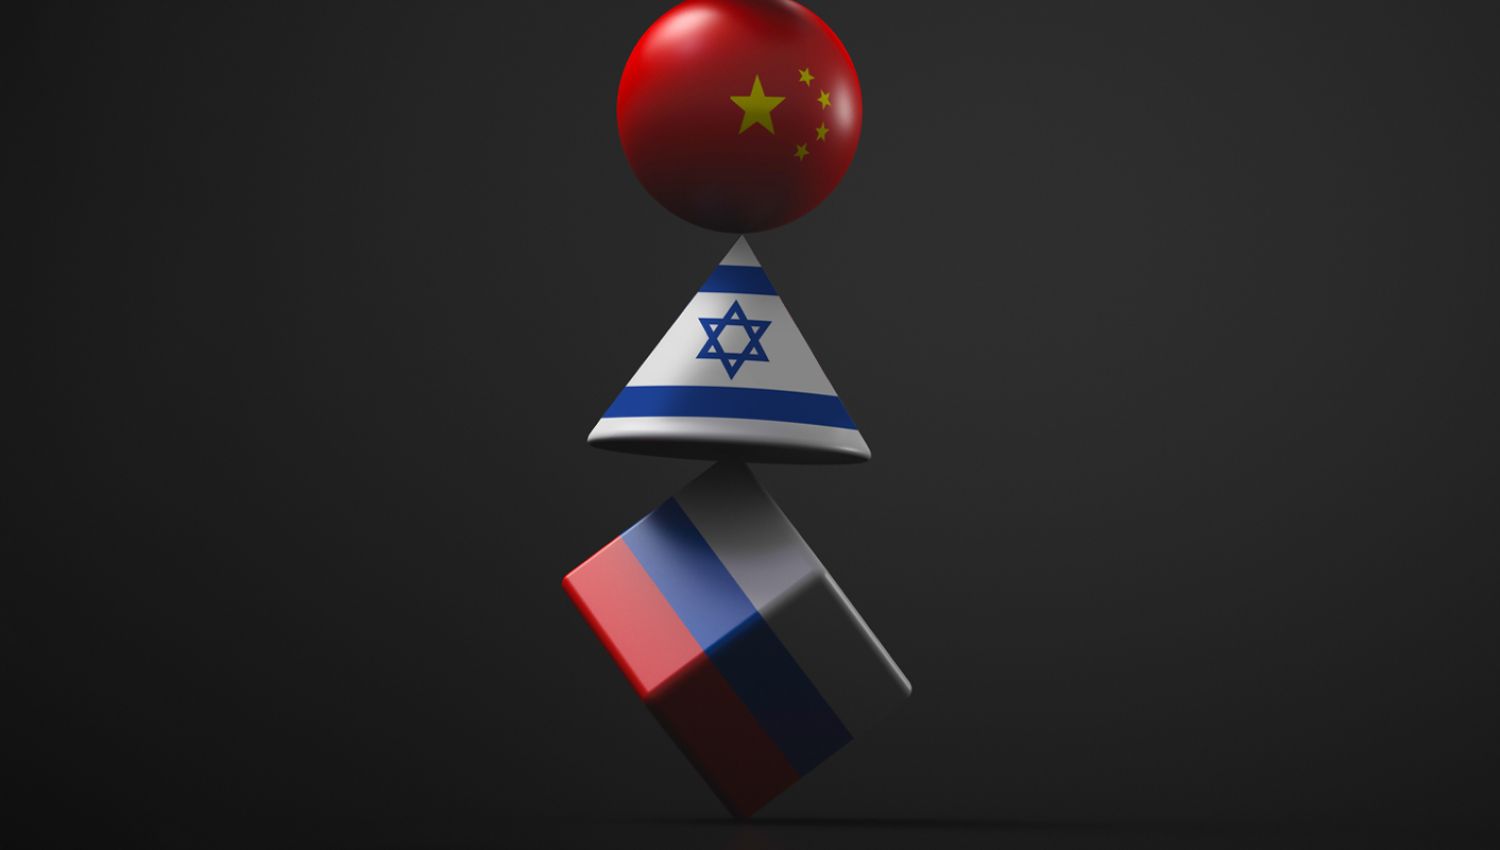 كيف ستكون علاقة "إسرائيل" مع الصين وروسيا في ظل النظام العالمي الجديد؟ 